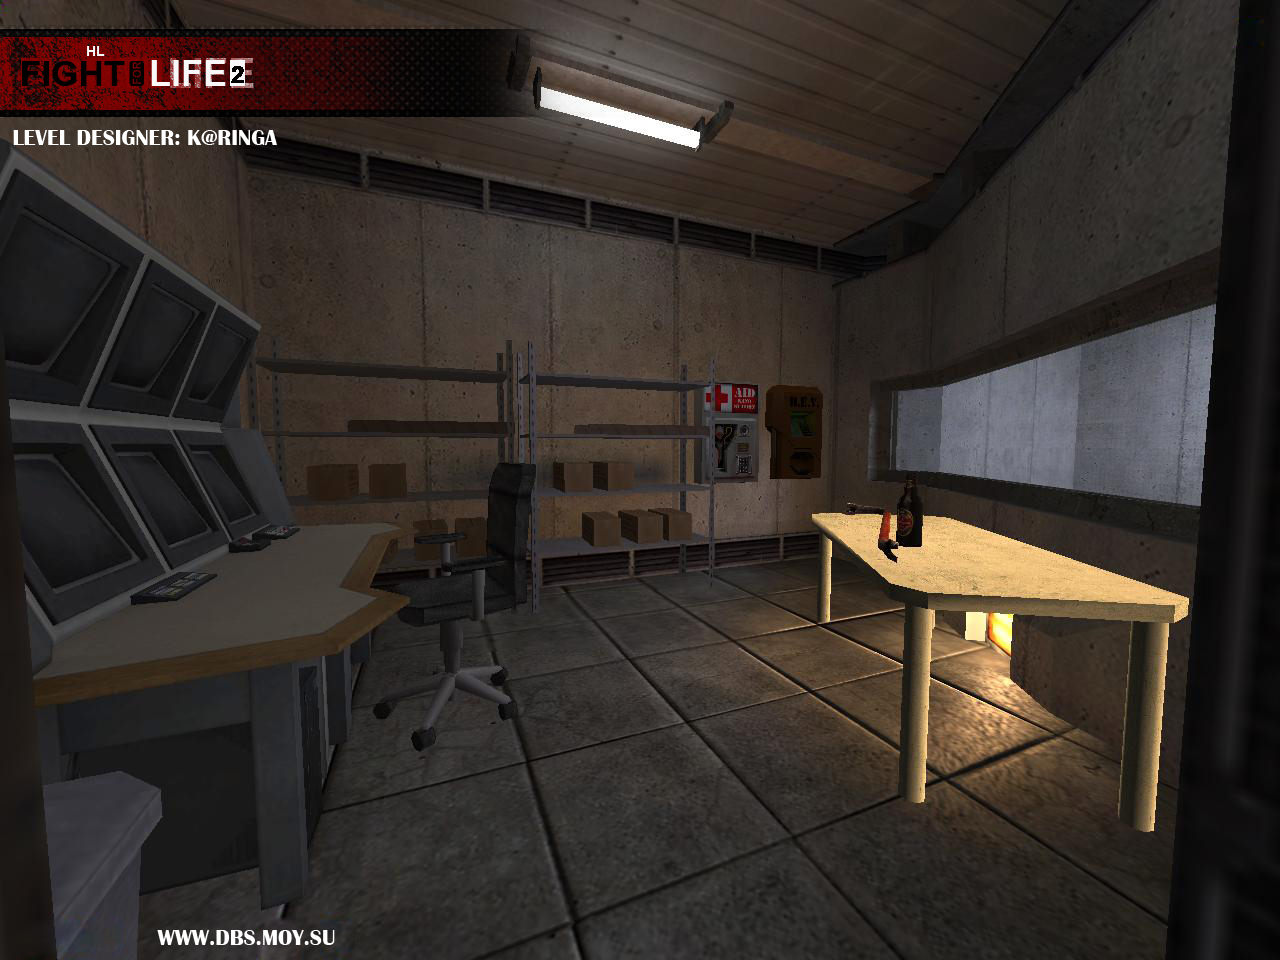 Как устанавливать моды халф лайф. Half Life Fight for Life. Half Life 2 моды. Half-Life: уровни 3d. Half Life ресторан в Москве.